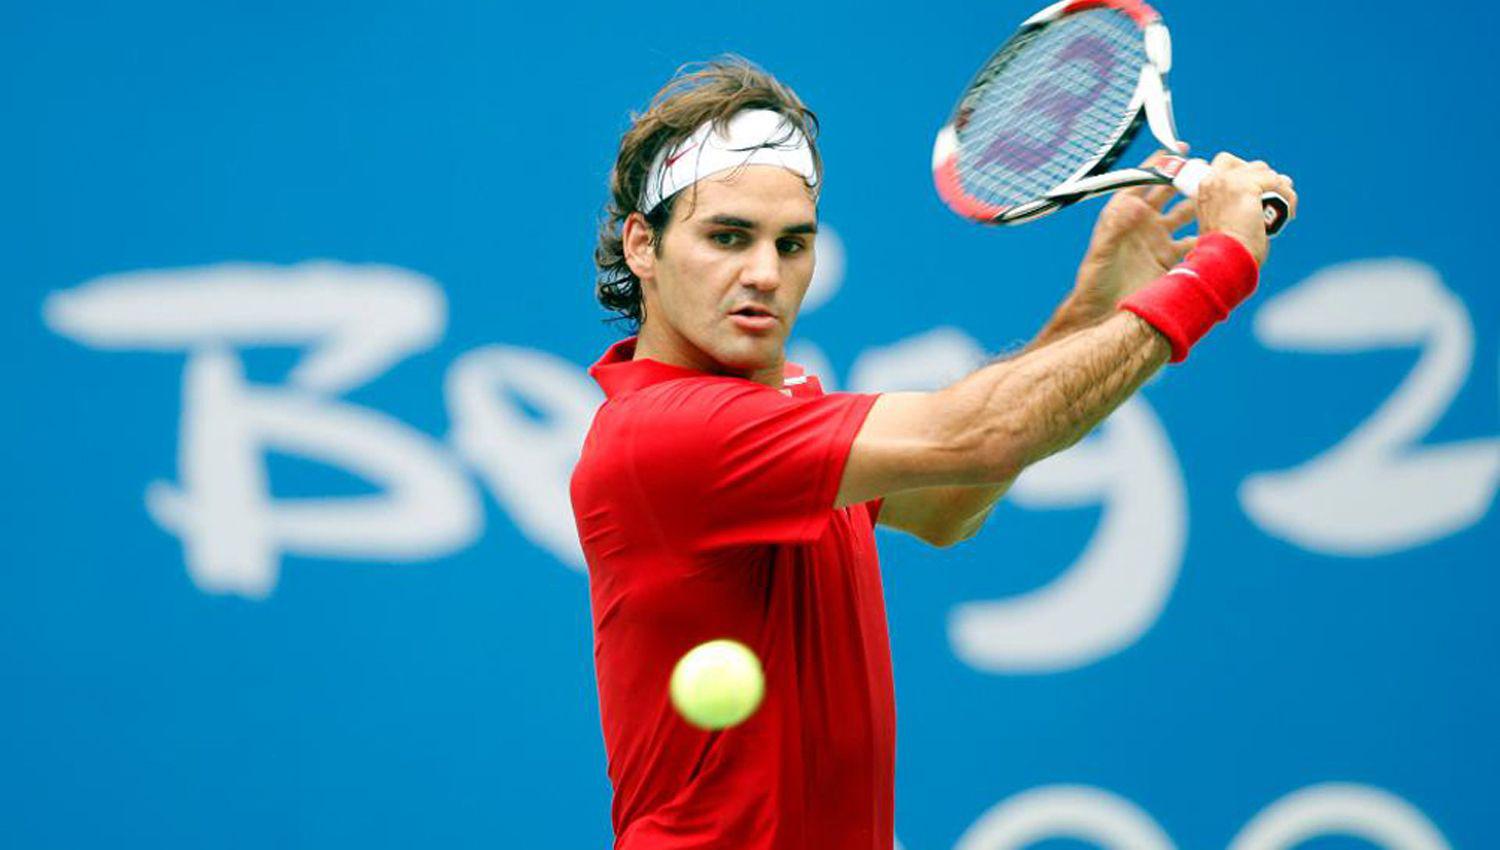 El ex n�mero uno del tenis mundial Roger Federer indicó que ahora ser� el tiempo de espera y de pensamiento positivo